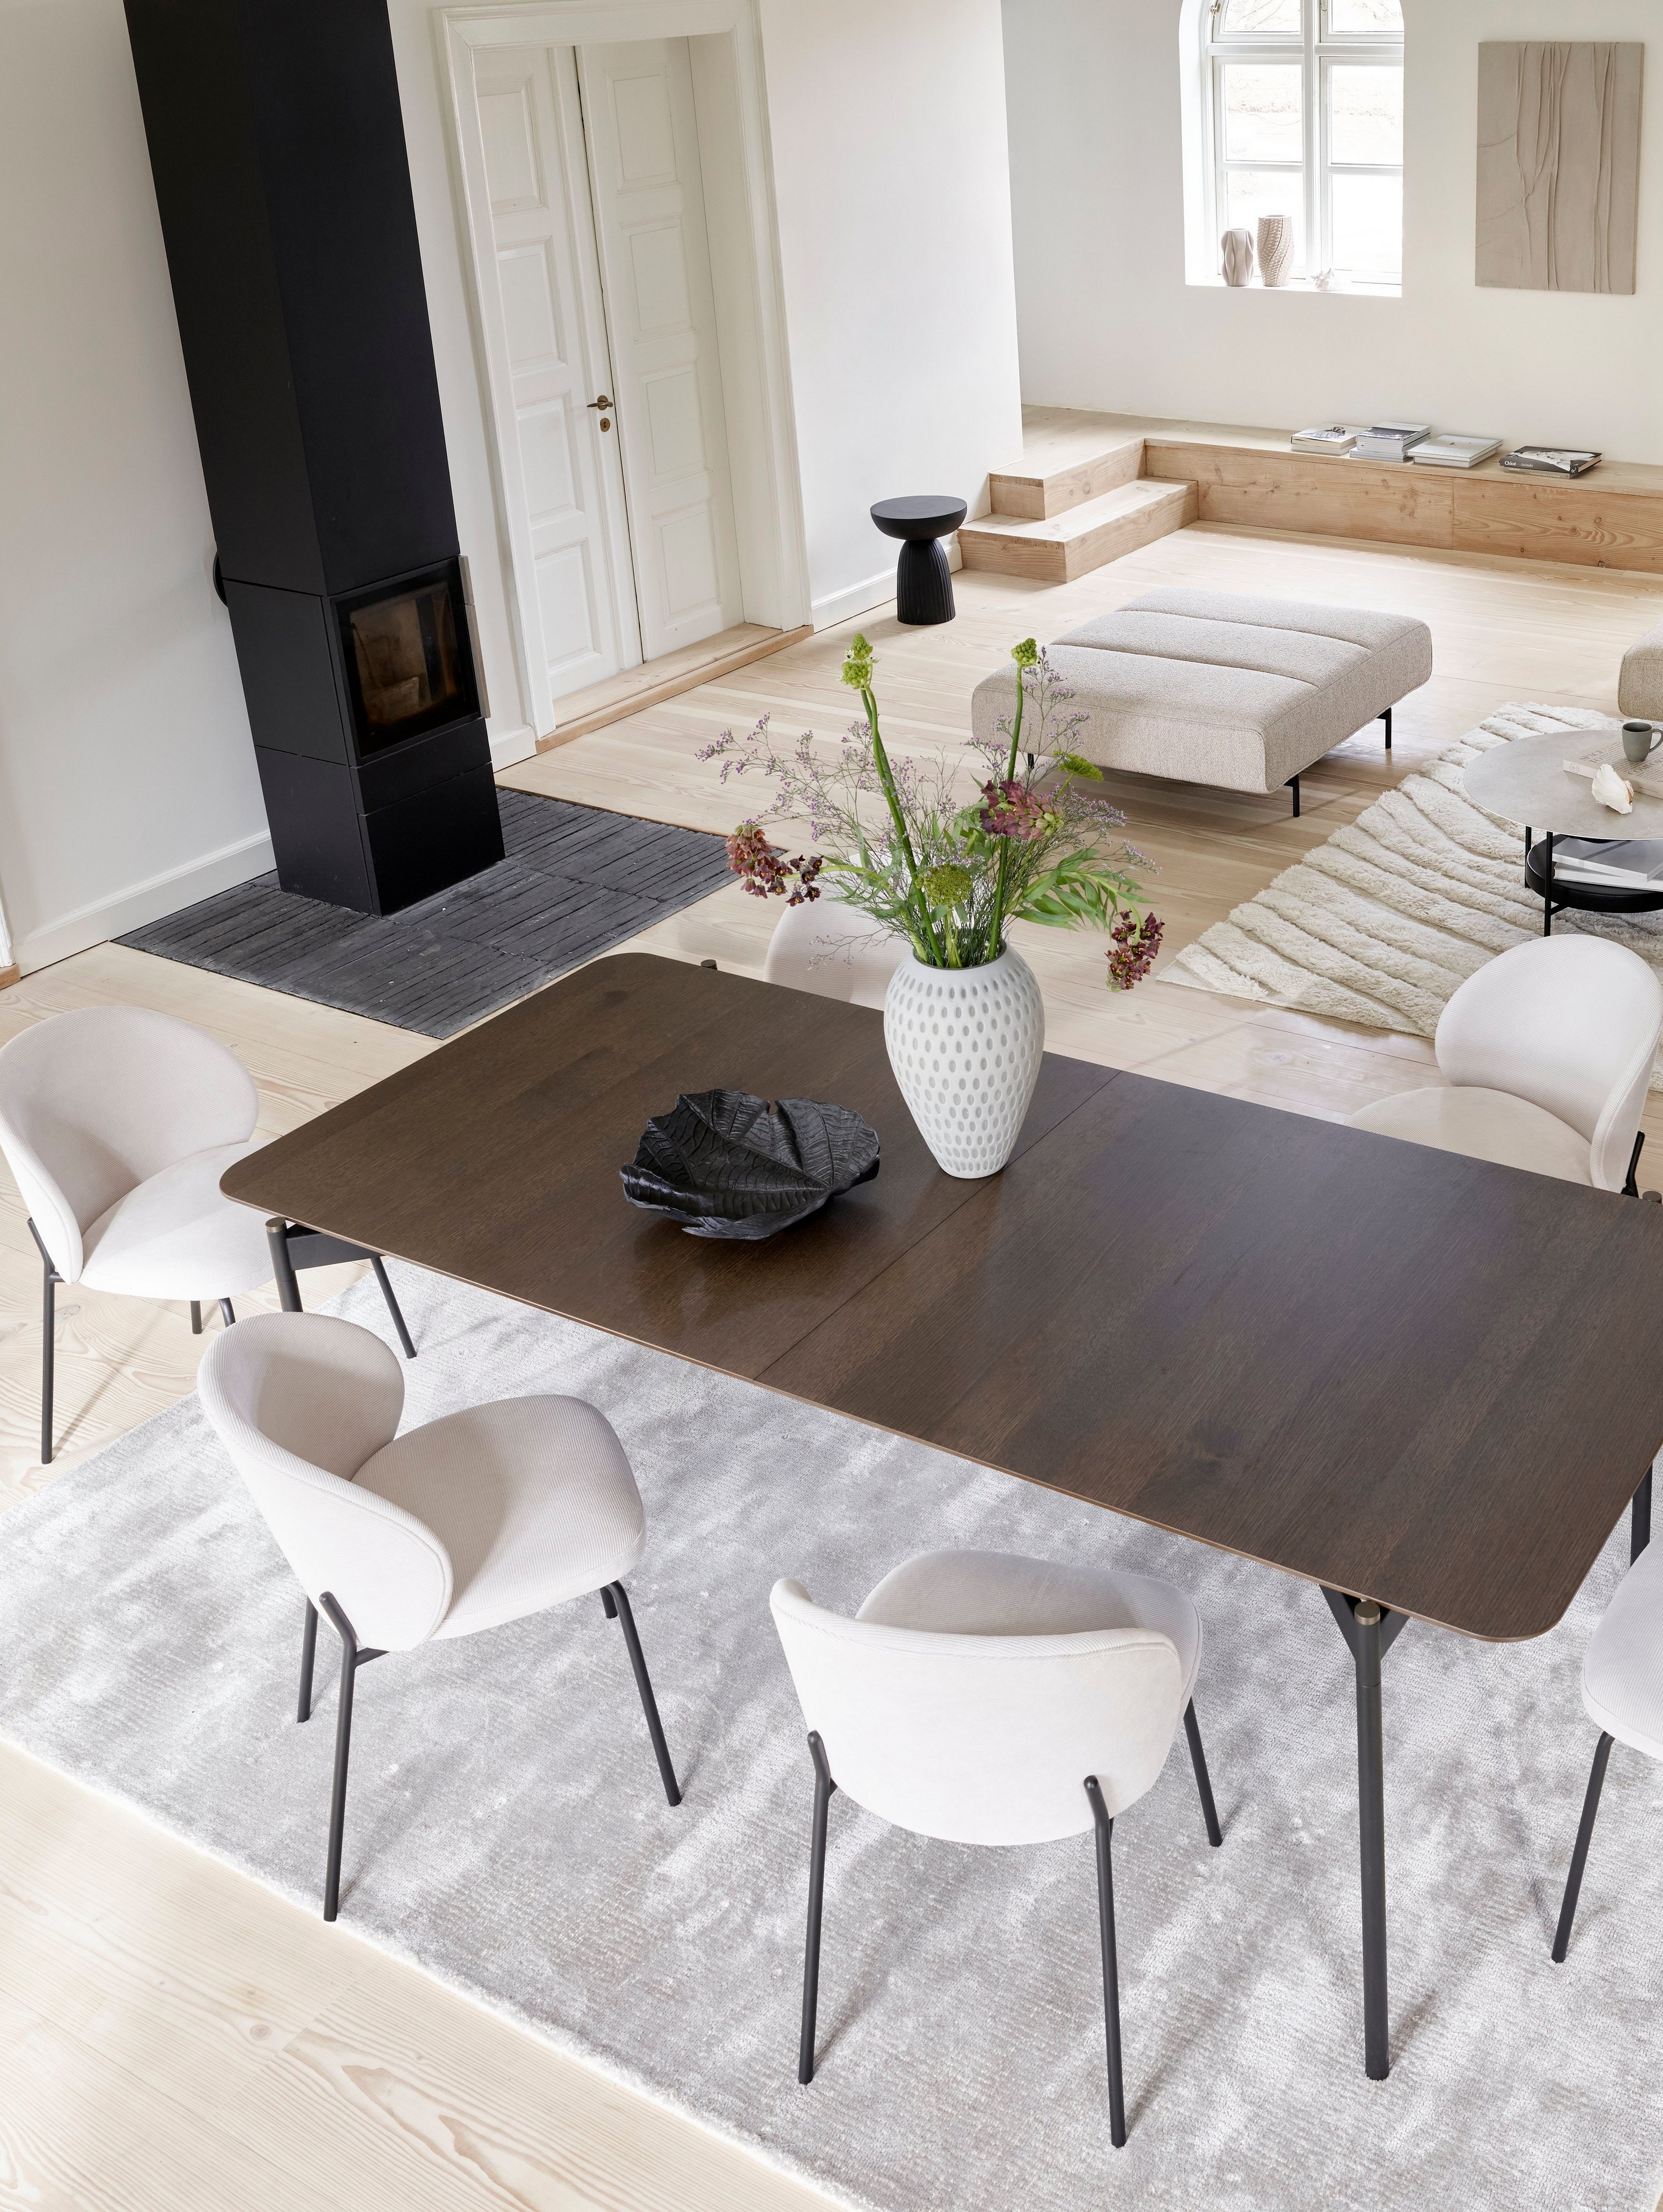 Угловой диван Amsterdam с модулем для отдыха и подставкой для ног, обитые тканью Lazio бежевого цвета, и стол Augusta в просторной гостиной.